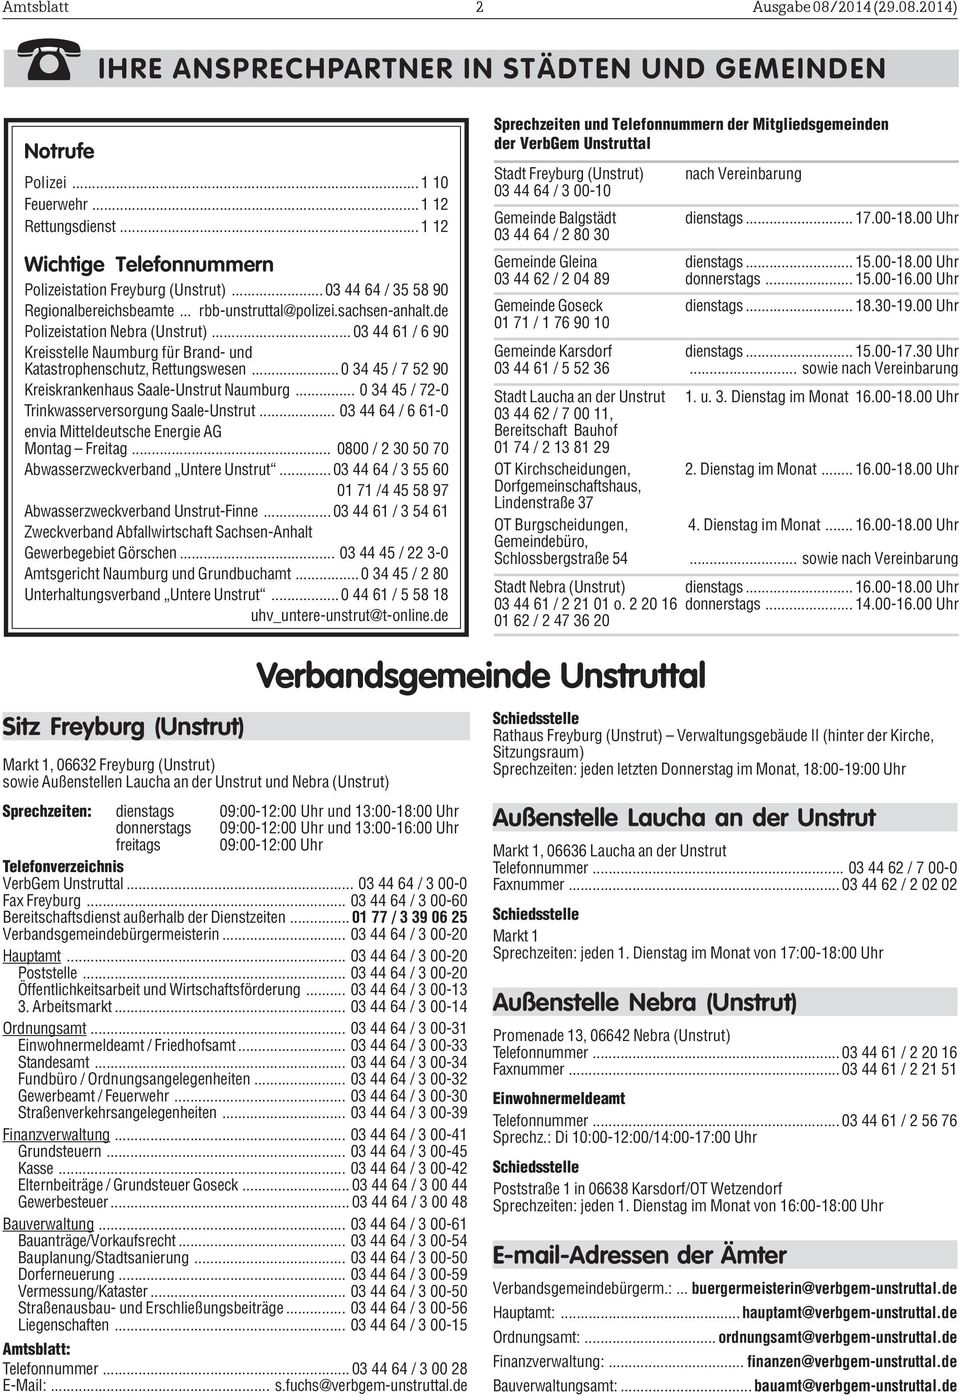 .. 03 44 61 / 6 90 Kreisstelle Naumburg für Brand- und Katastrophenschutz, Rettungswesen...0 34 45 / 7 52 90 Kreiskrankenhaus Saale-Unstrut Naumburg.